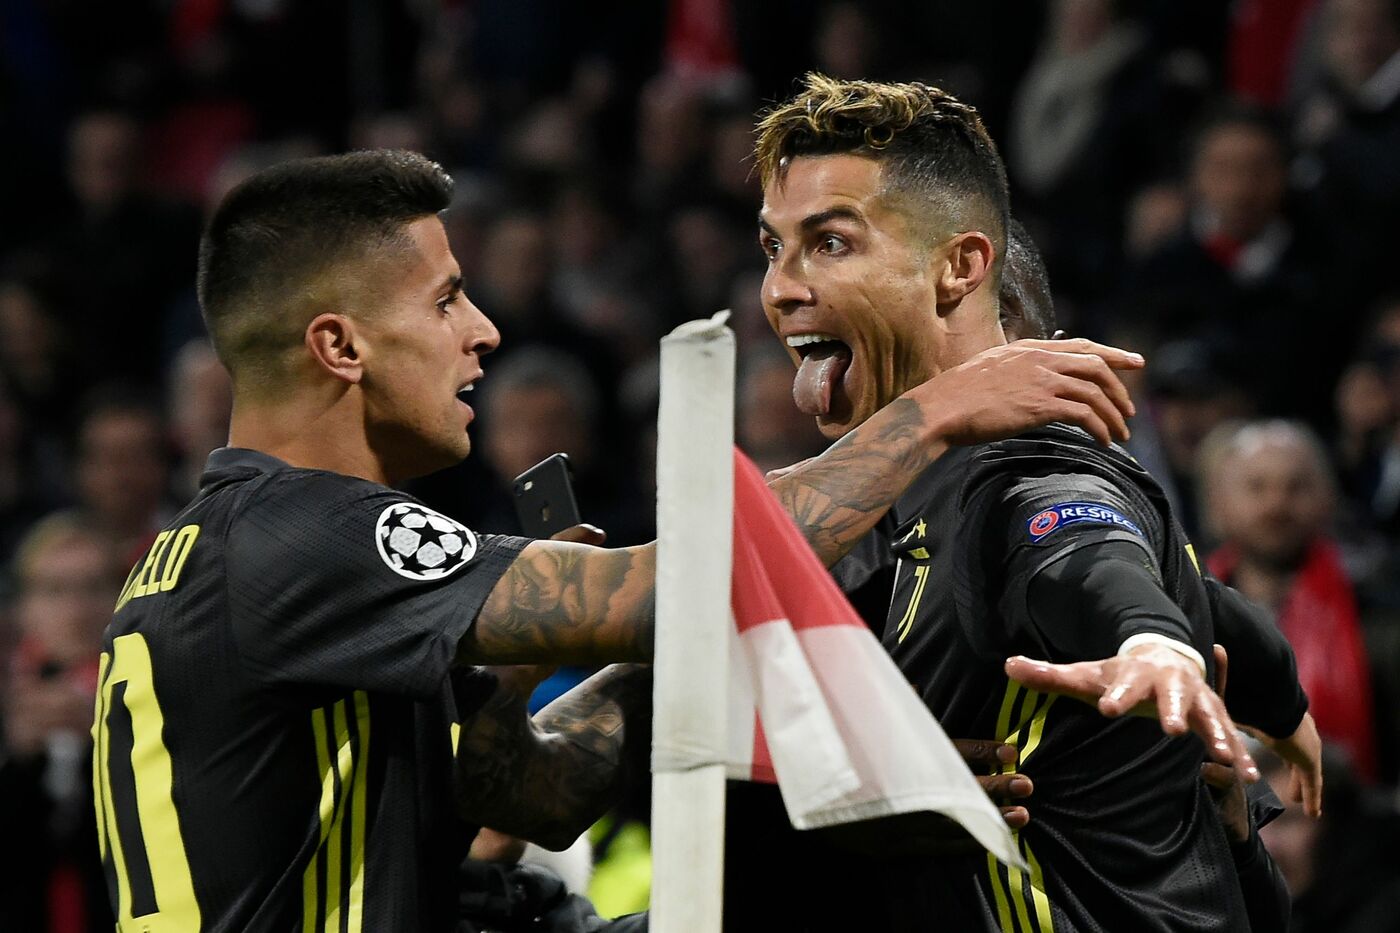 Champions League, Juventus-Ajax martedì 16 aprile: analisi e pronostico del ritorno dei quarti di finale della competizione